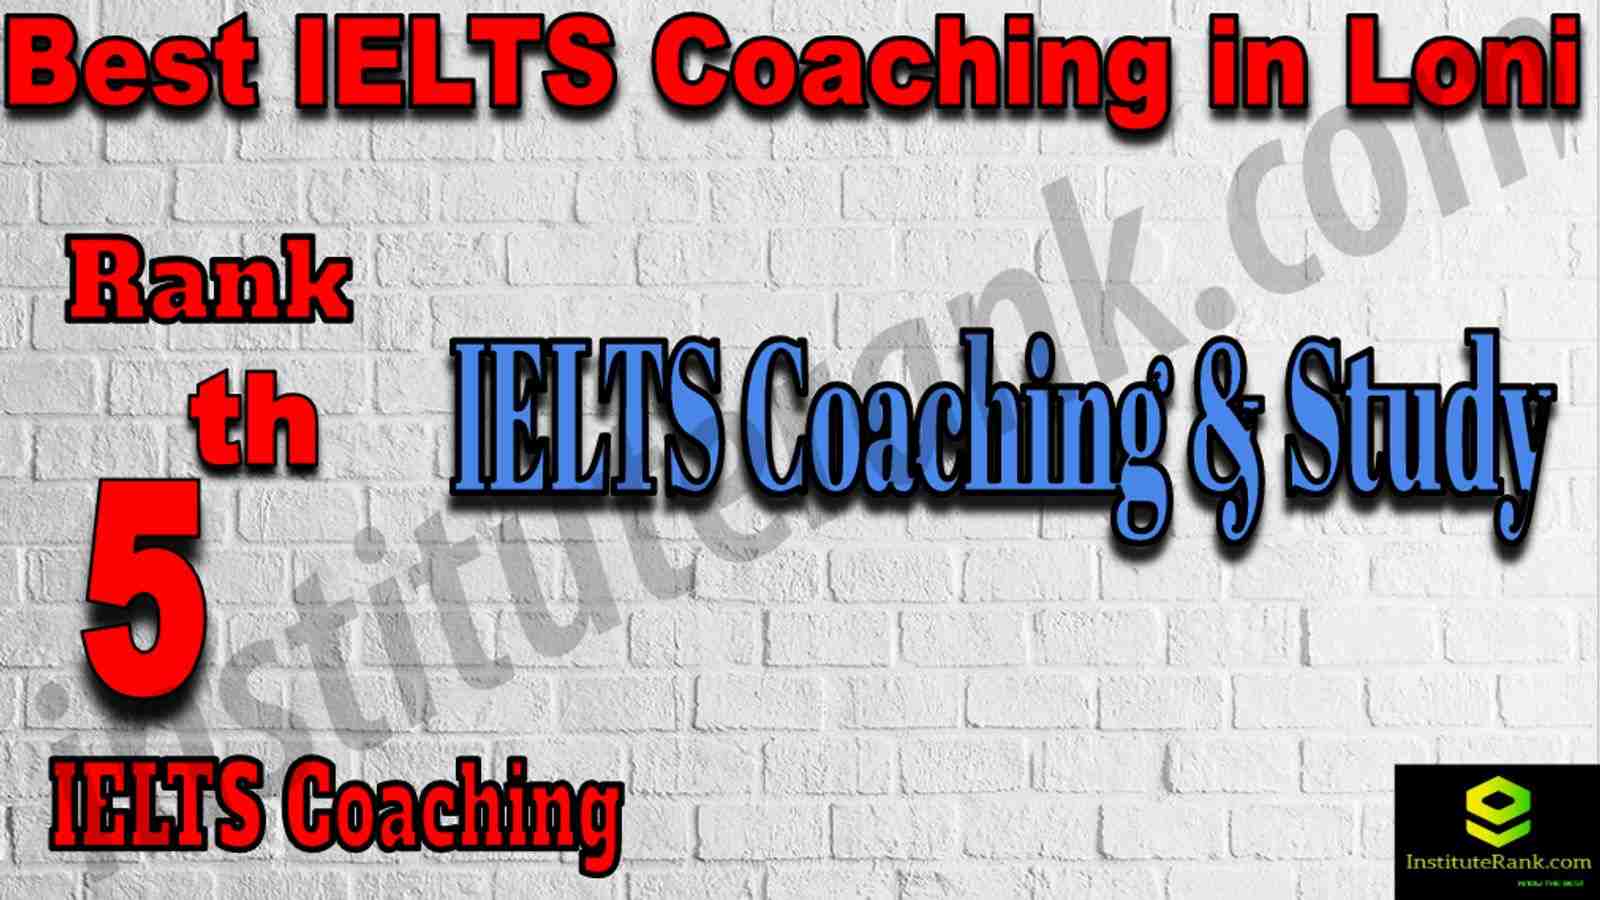 5th Best IELTS Coaching in Loni